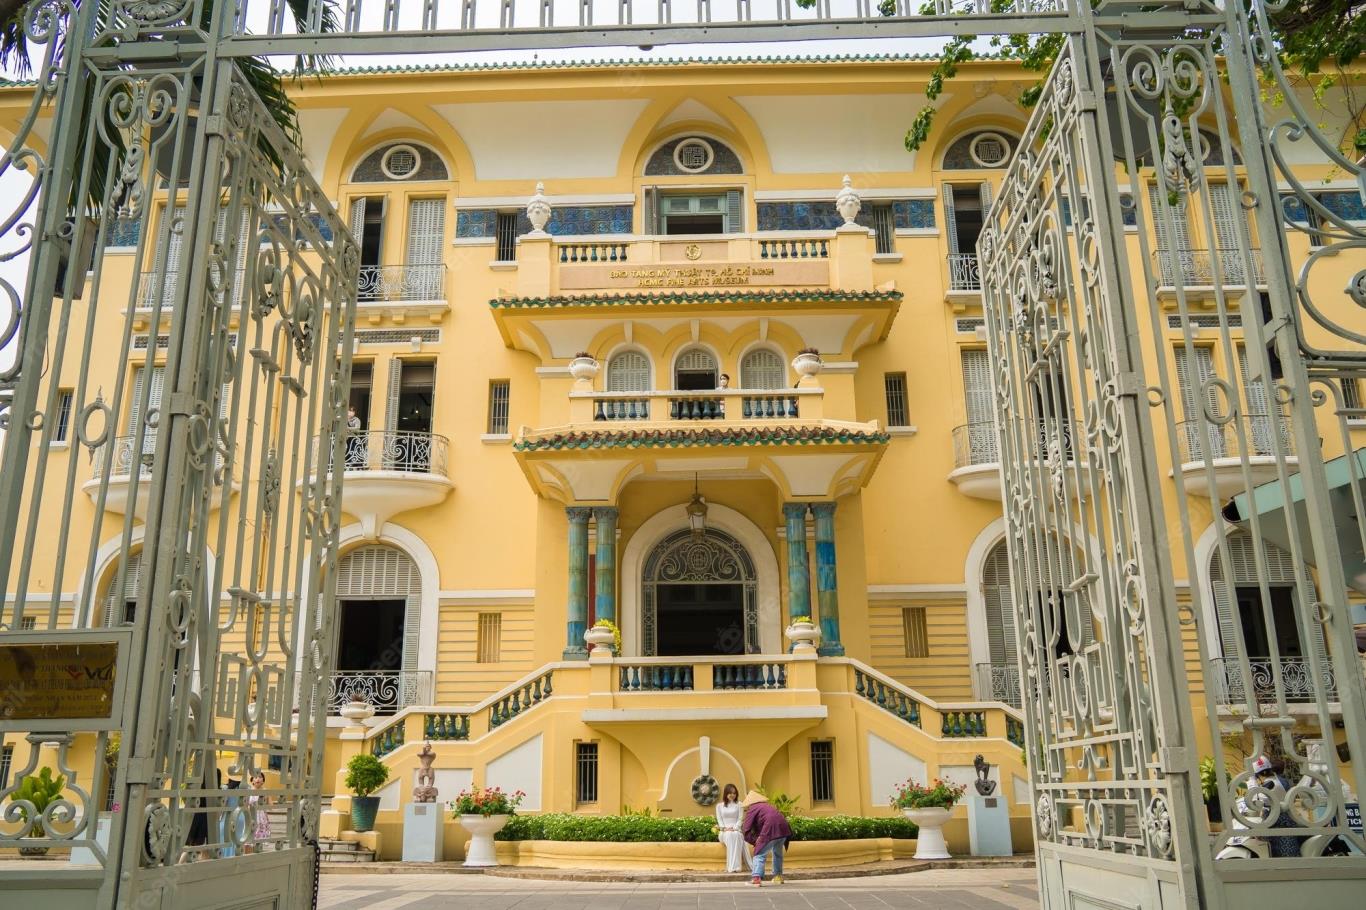 Bảo Tàng Mỹ Thuật Hồ Chí Minh, nơi tìm kiếm các tác phẩm nghệ thuật đáng quý trong chuyến du lịch Sài Gòn